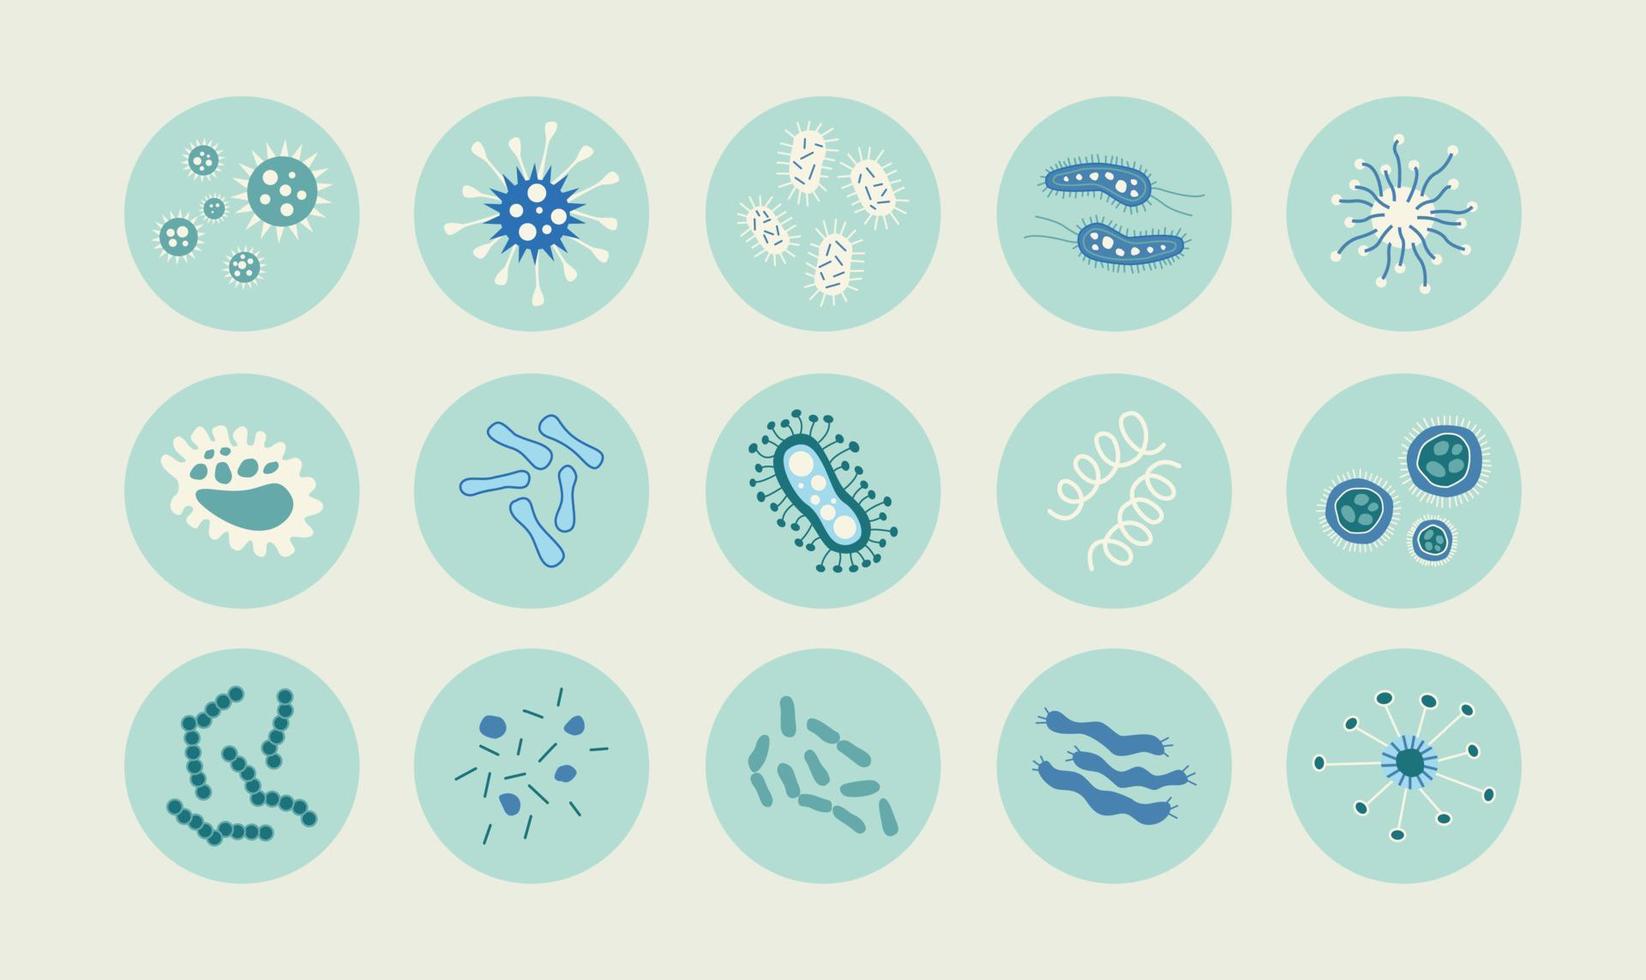 defina o ícone de diferentes pacotes de microrganismos infecciosos isolados. coleção de desenhos animados de germes infecciosos, protestos, micróbios. um monte de doenças que causam bactérias, vírus. vetor